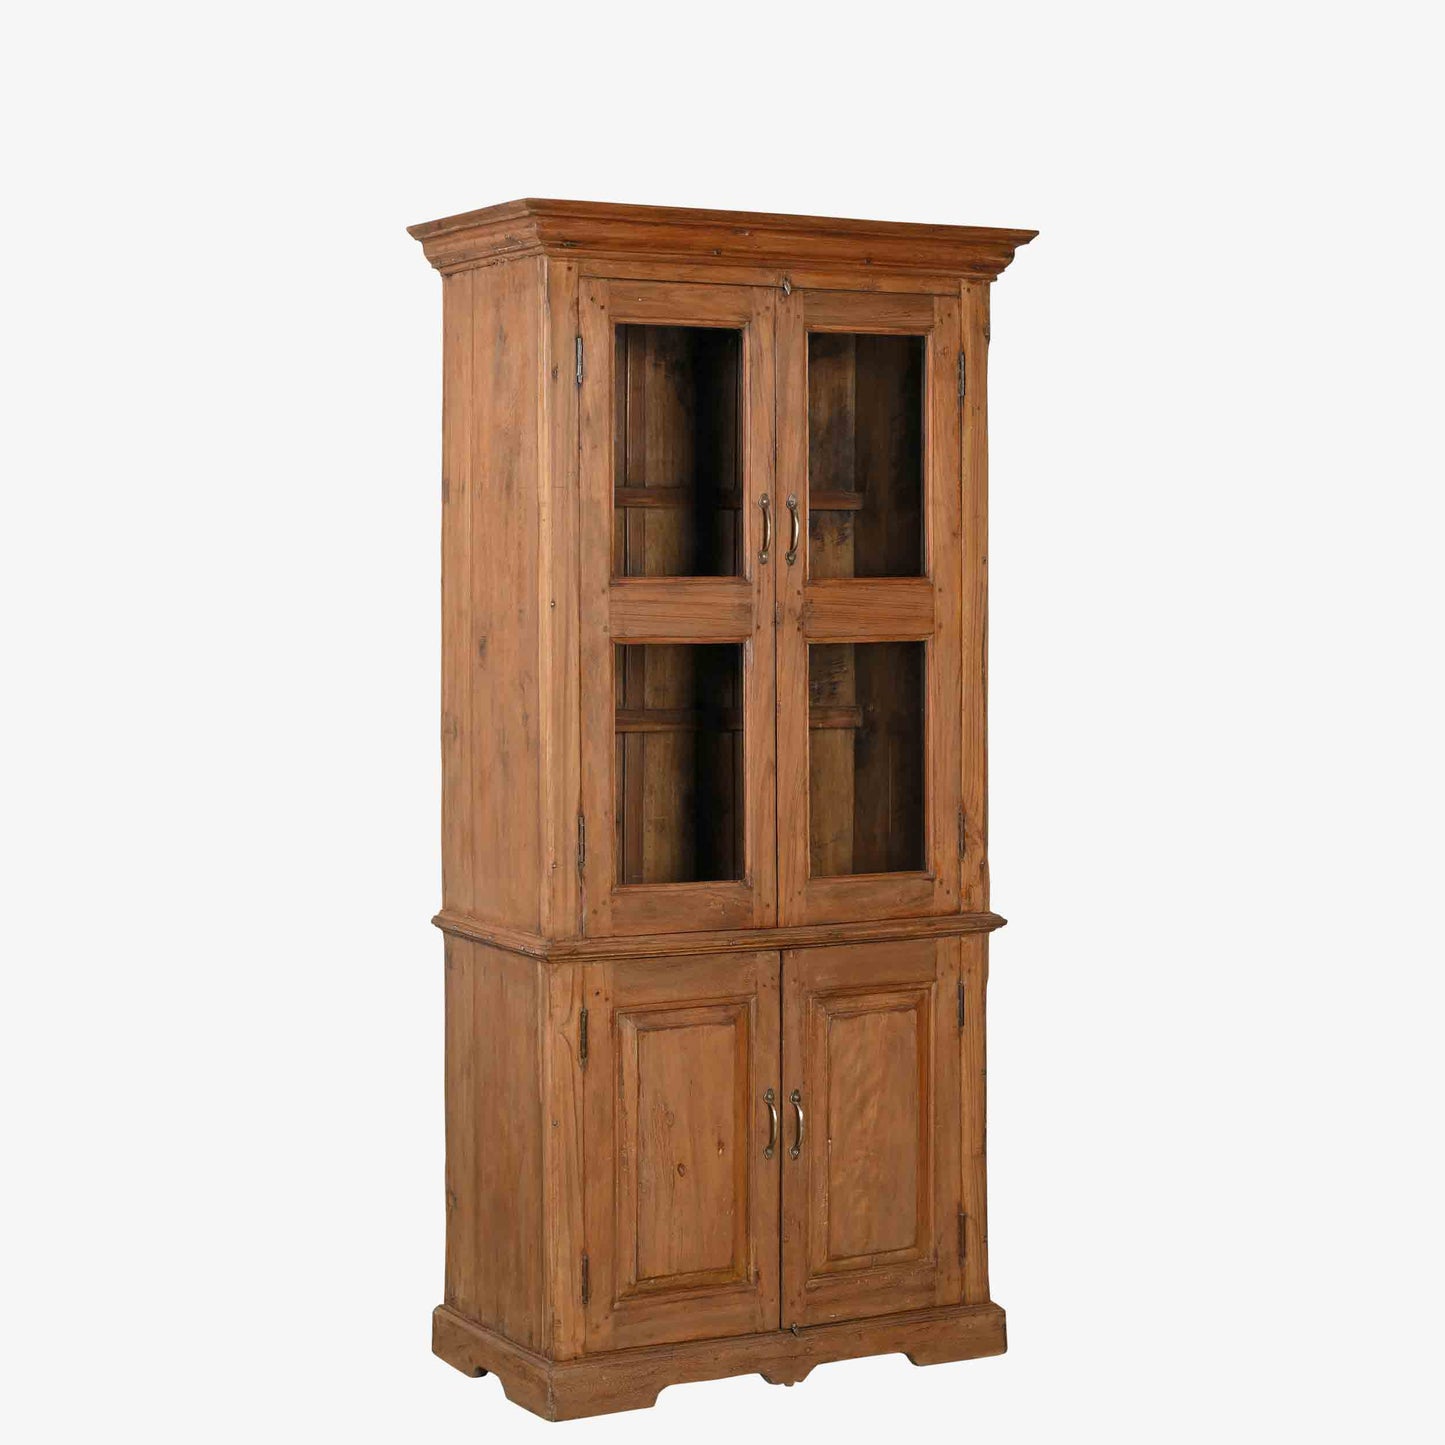 The Keenan Antique Dresser with hidden storage